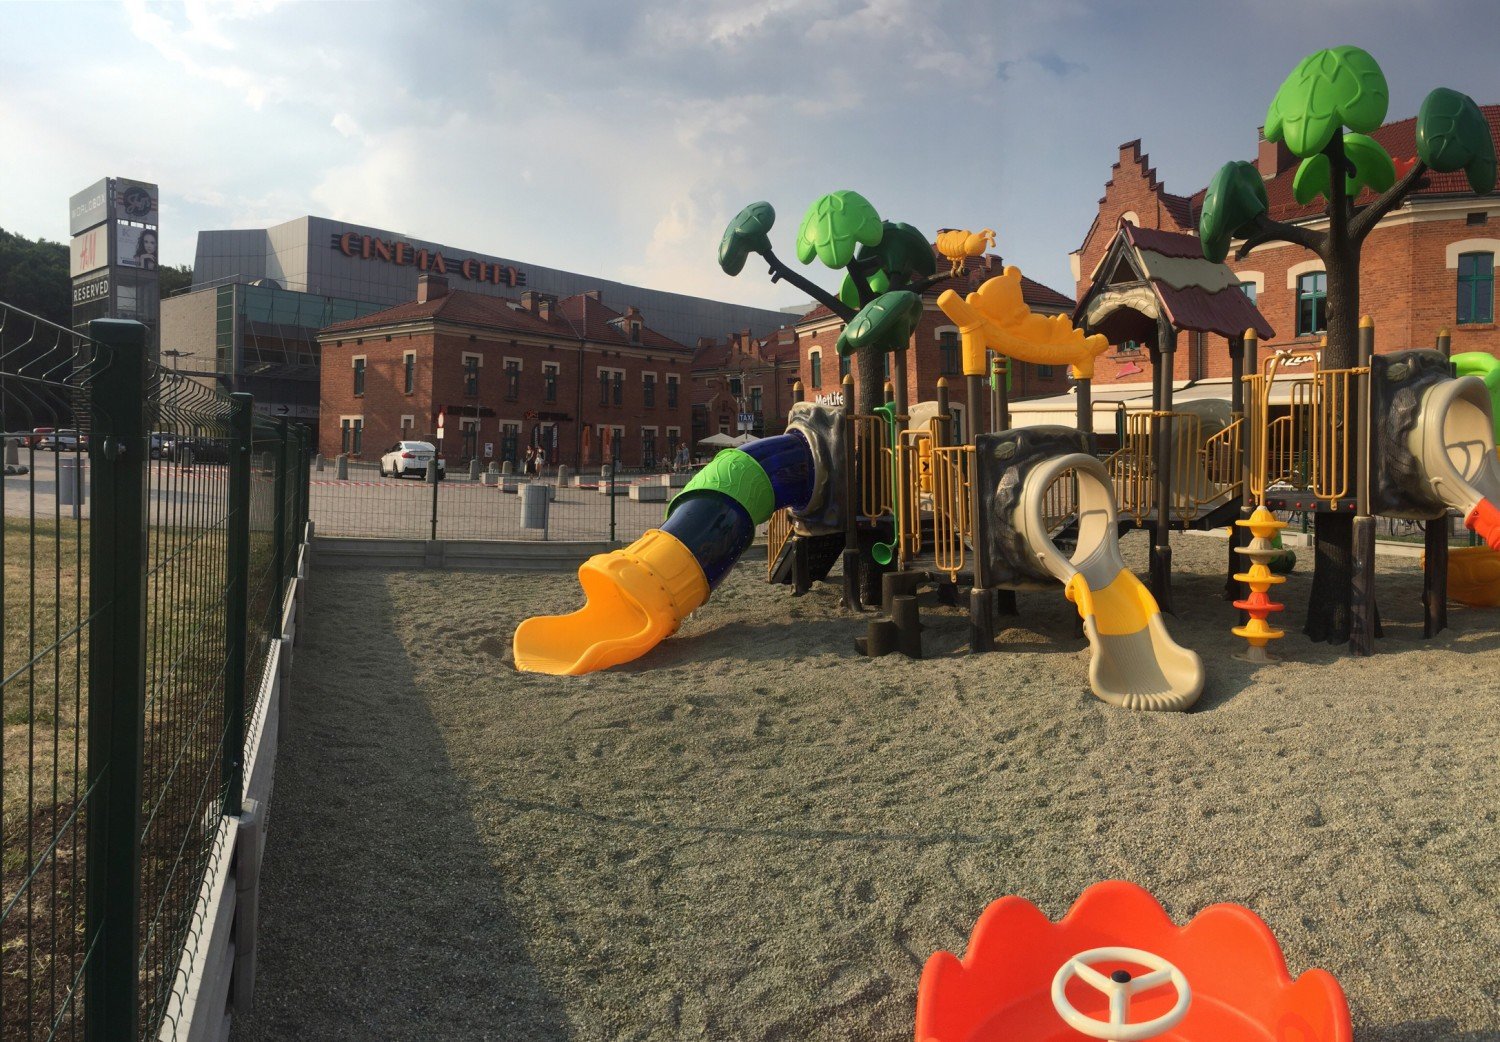 Wyjątkowy plac zabaw przed Galerią Kazimierz już otwarty [ZDJĘCIA] | Kraków  Nasze Miasto